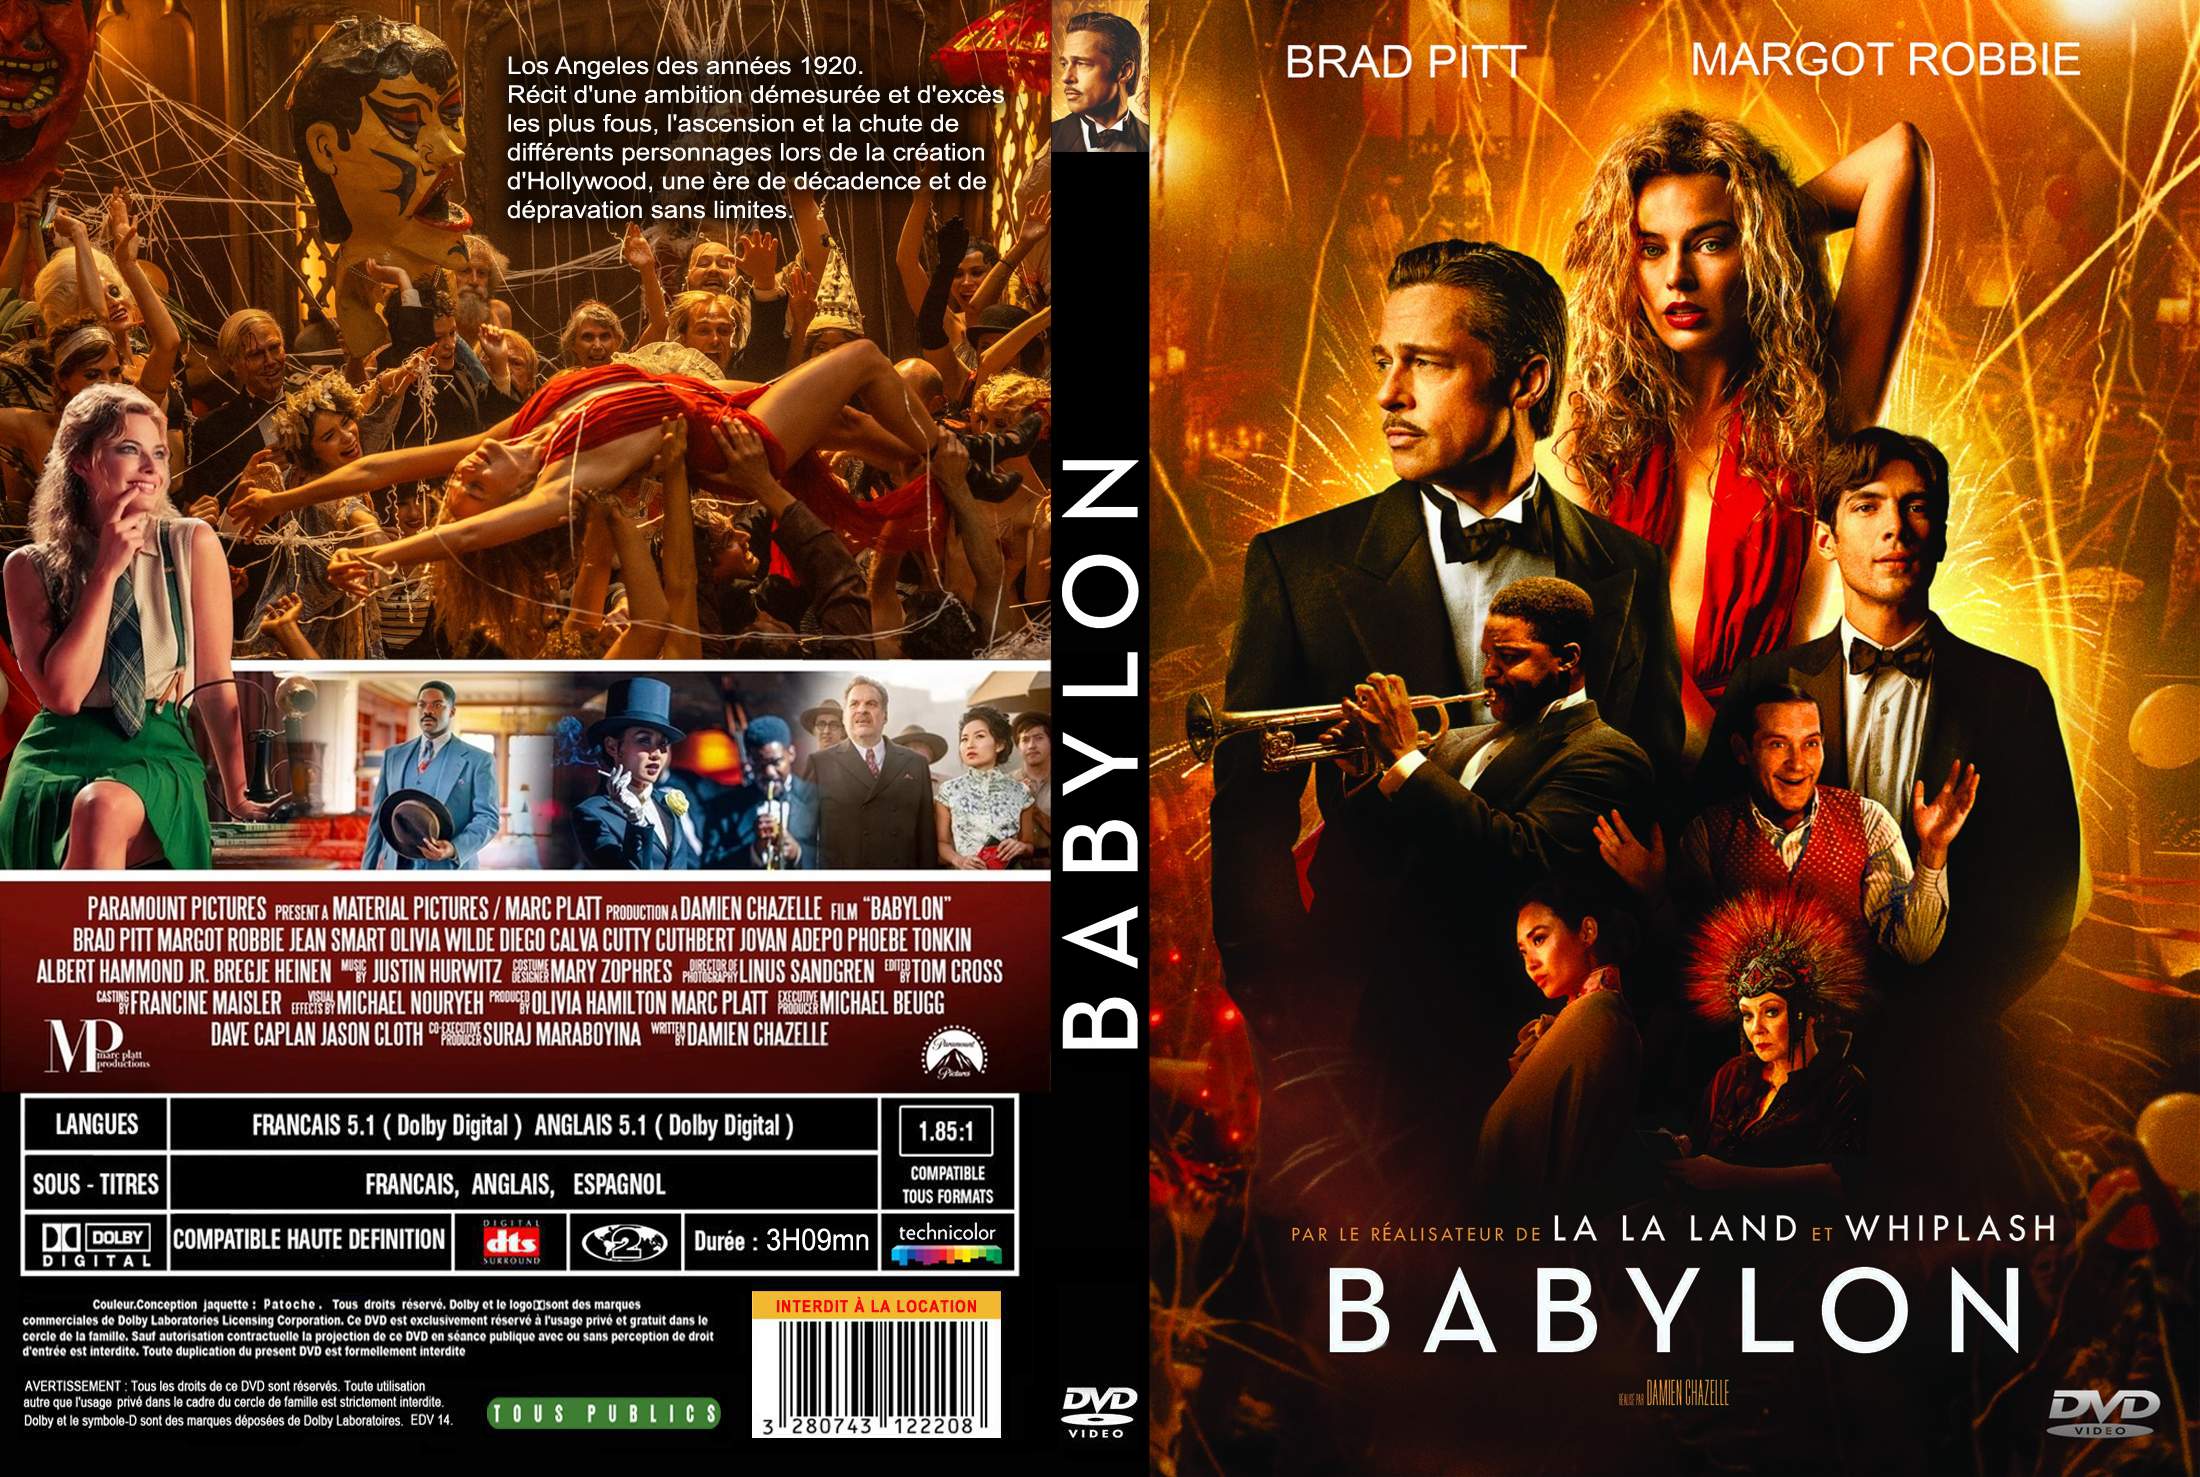 Jaquette DVD Babylon custom